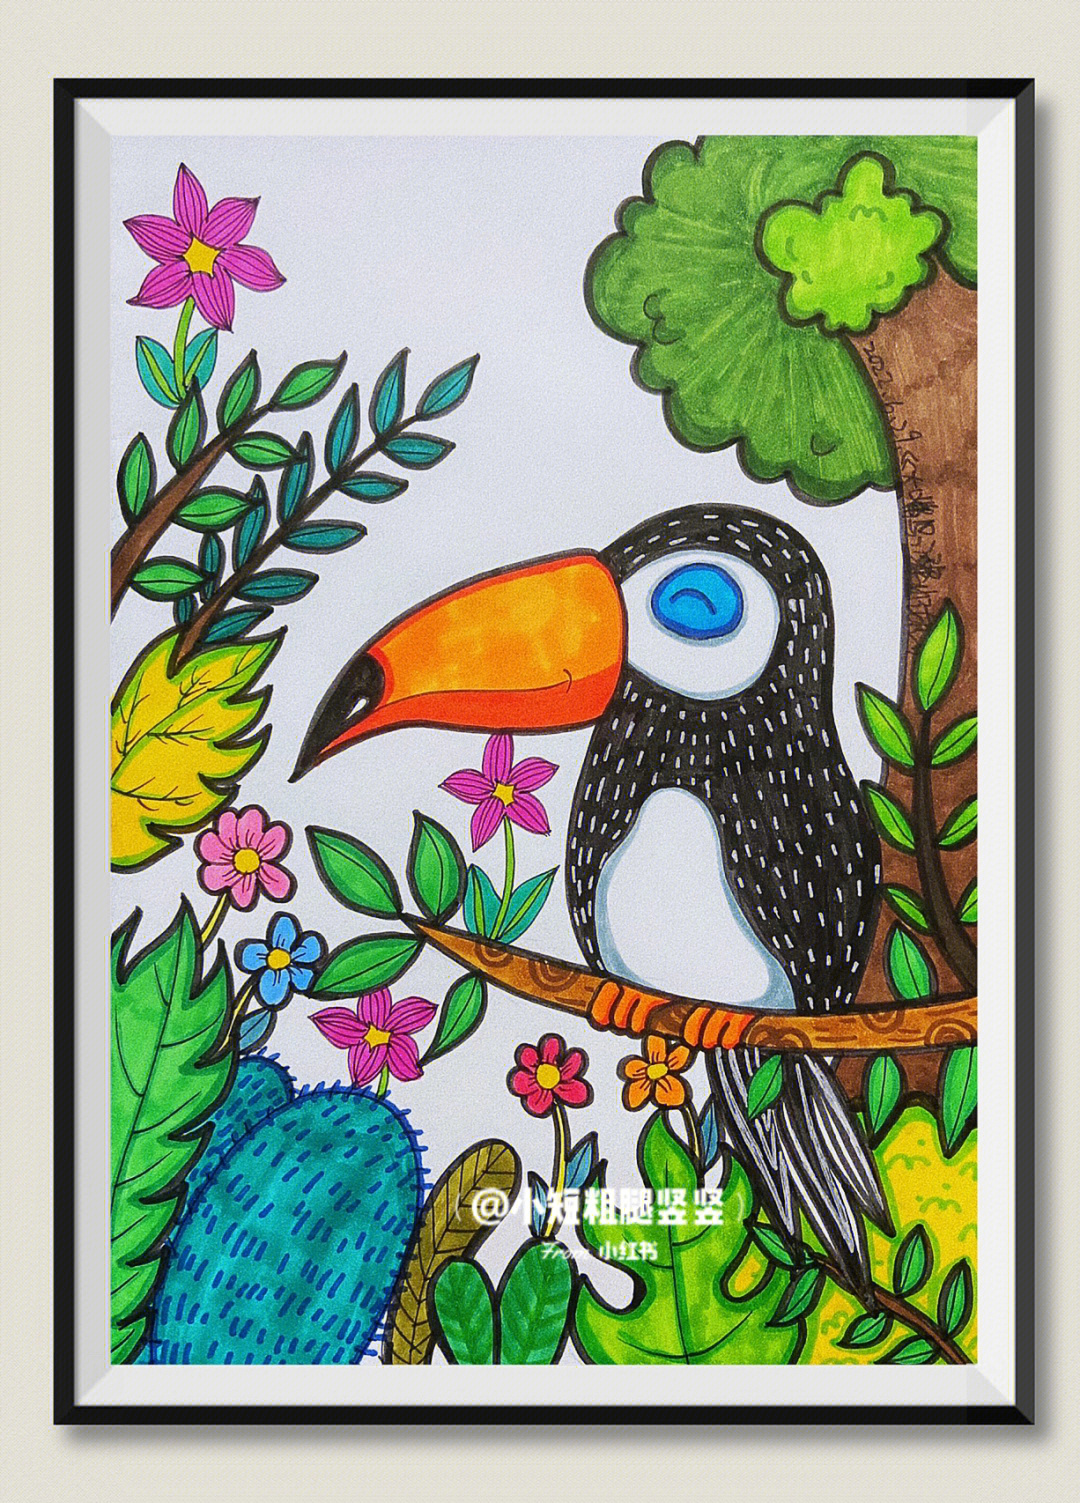 大嘴鸟儿童画的画法图片